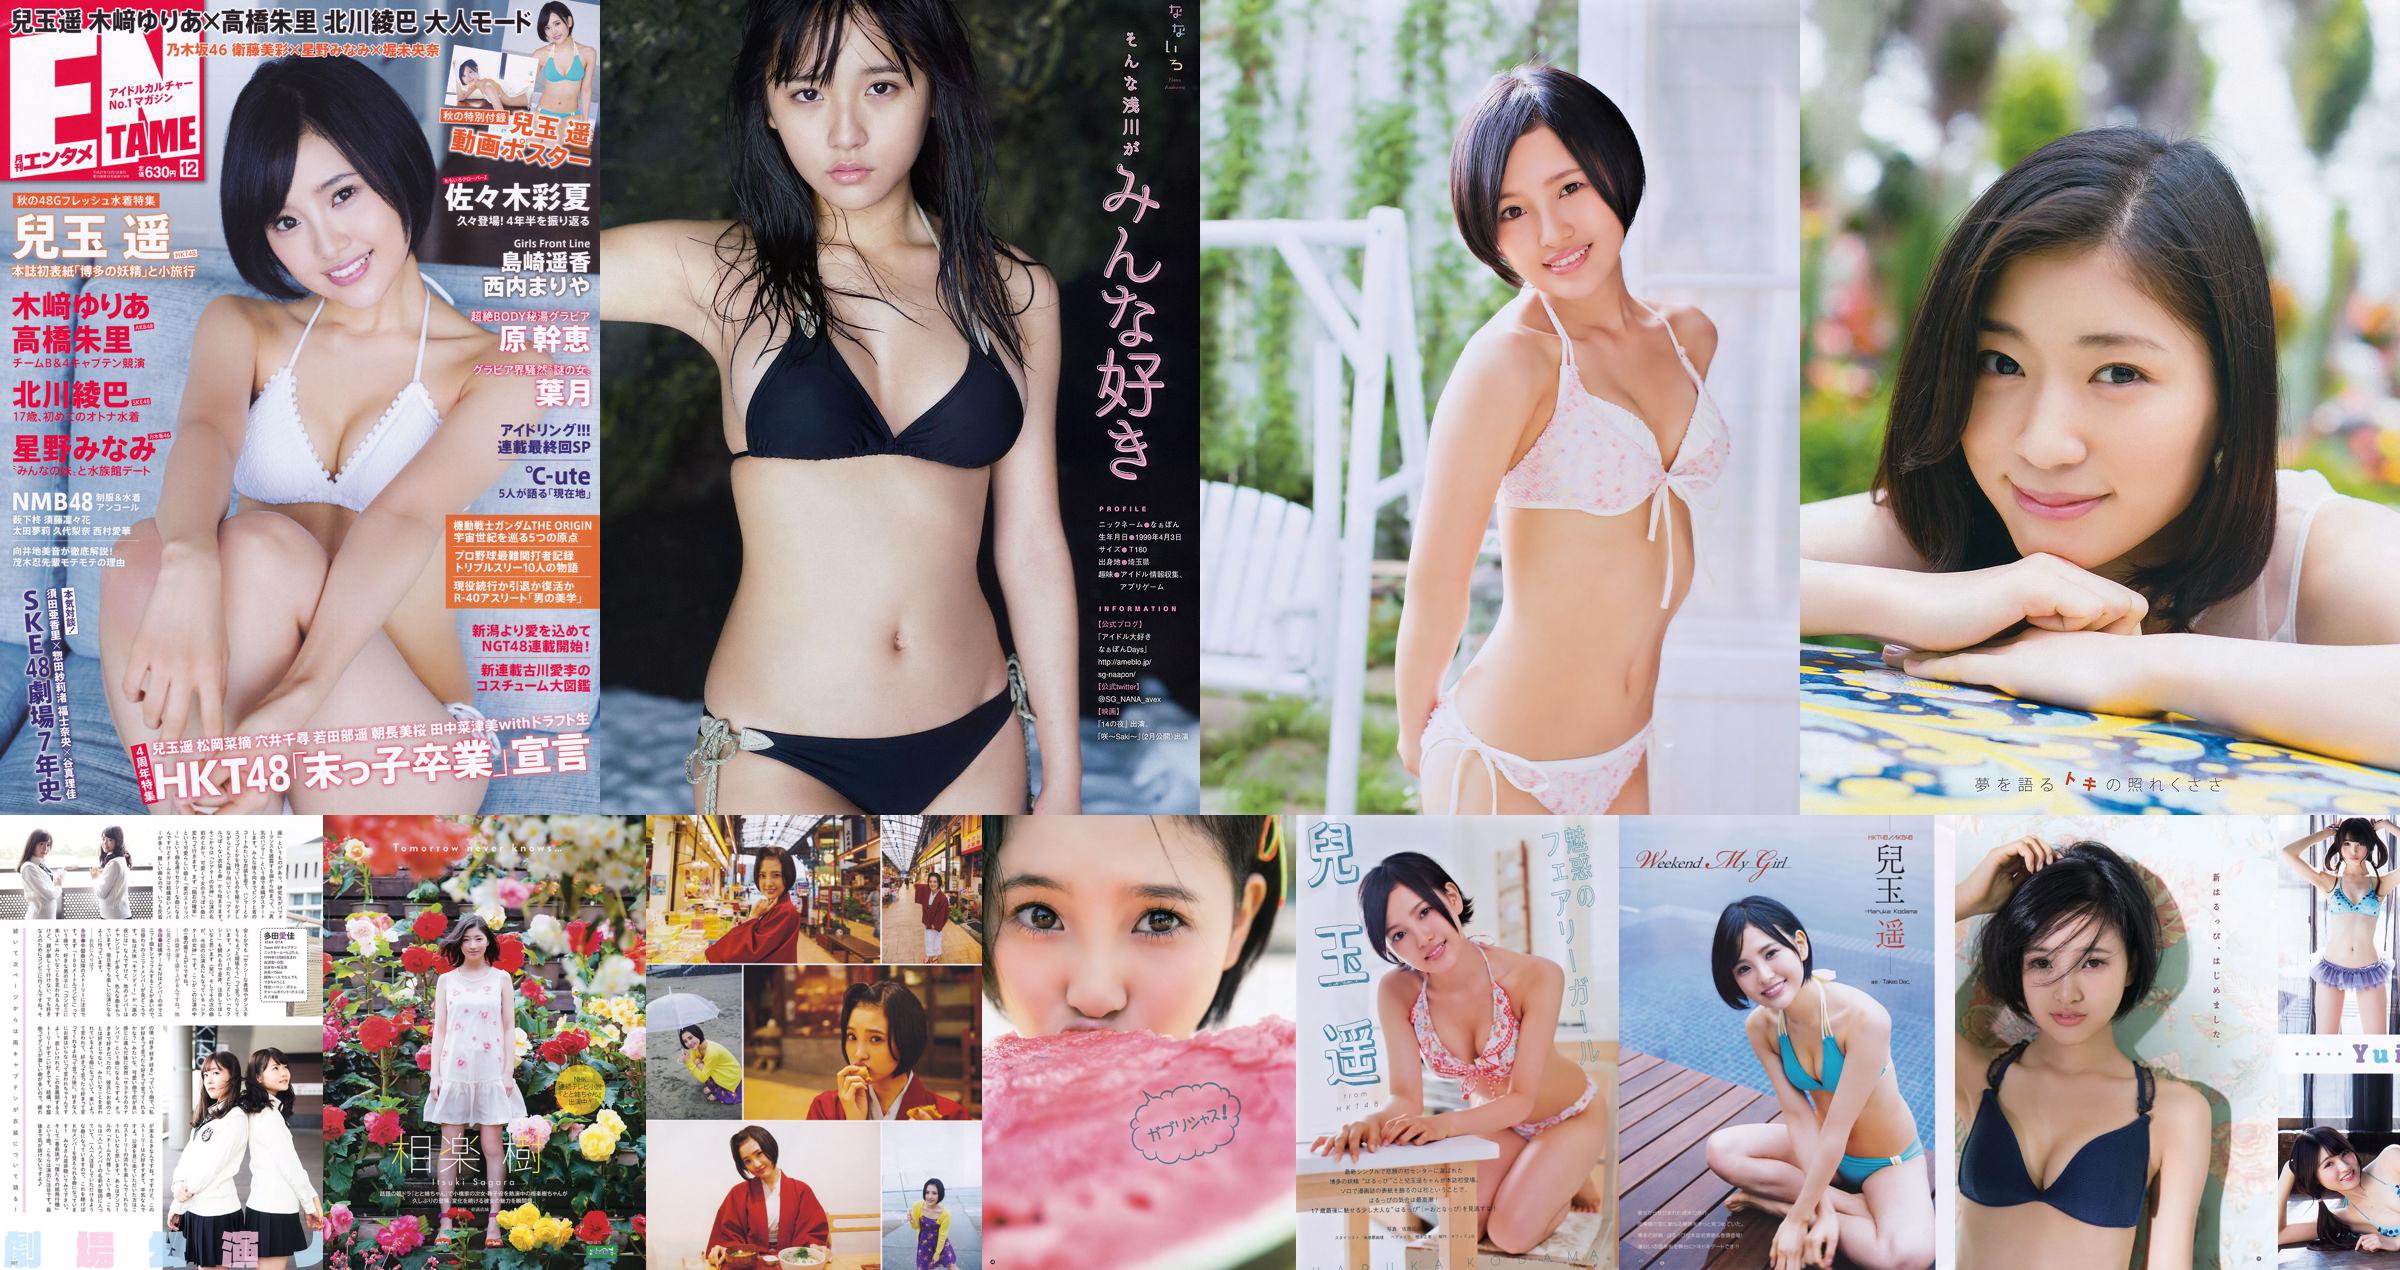 [Mangá Action] Kodama Haruka Miyawaki Sakura 2015 No.09 Photo Magazine No.28d70a Página 2